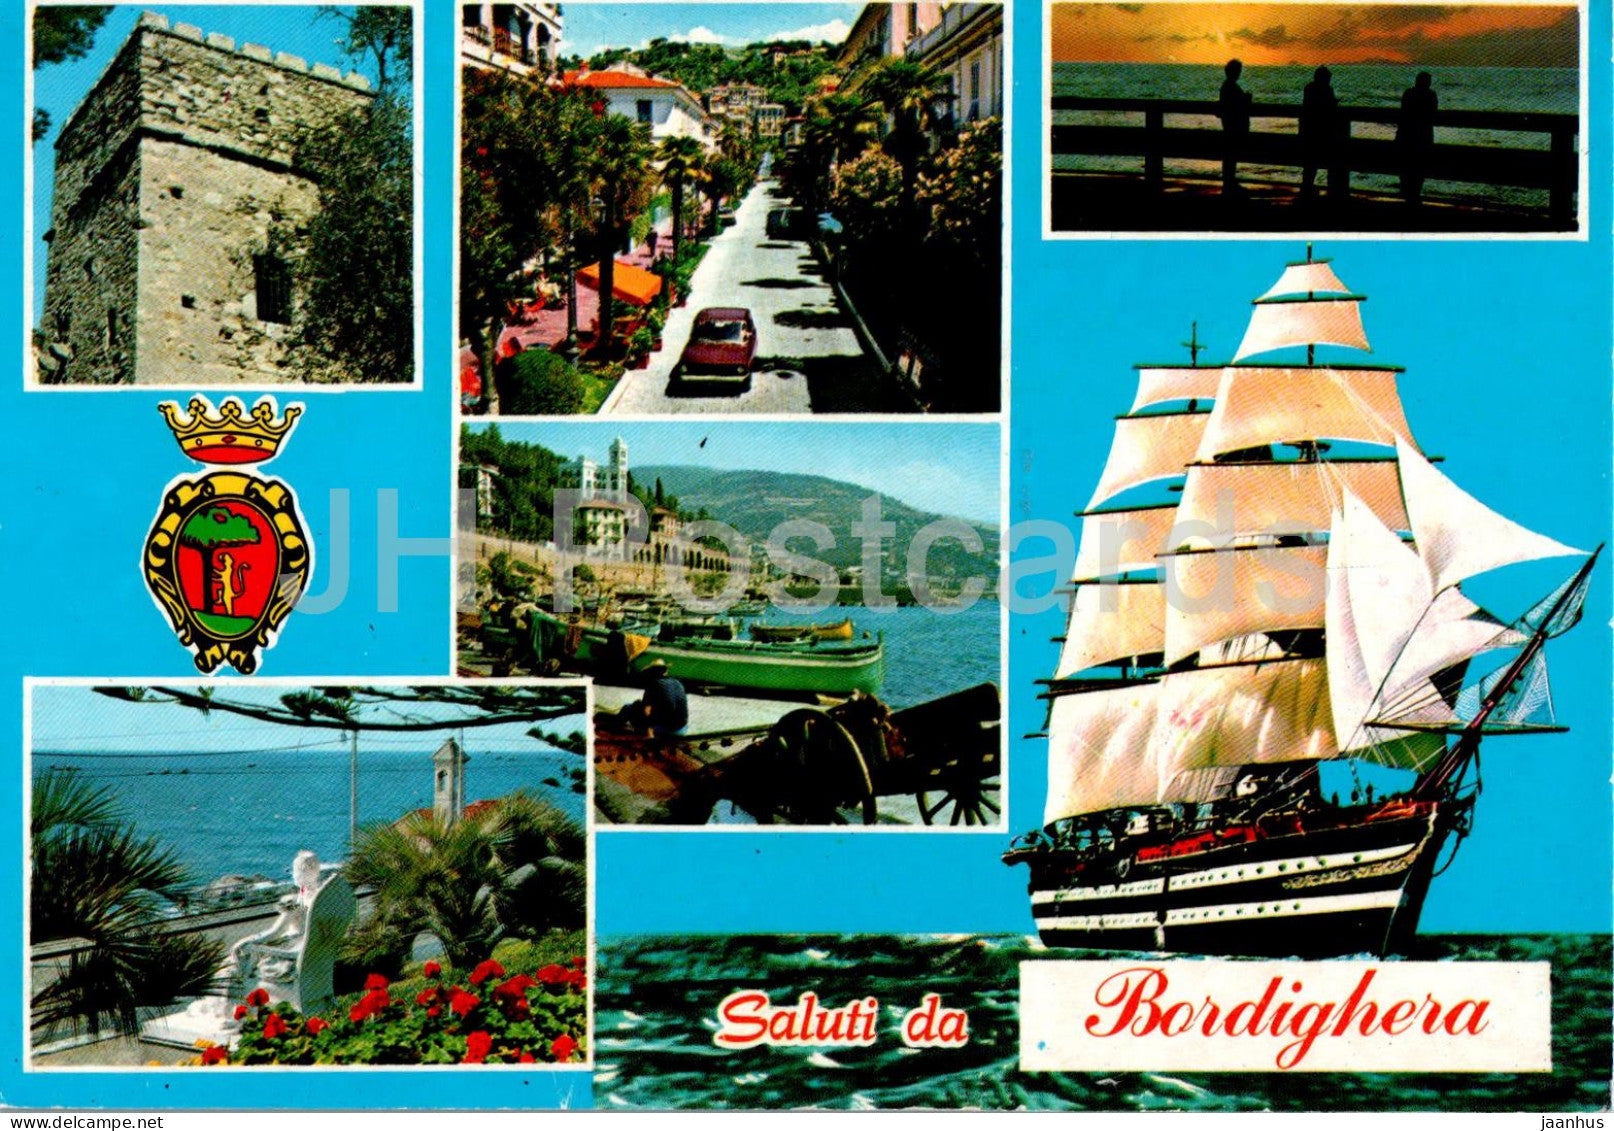 Saluti da Bordighera - Riviera dei Fori - ship - multiview - 8355 - 1995 - Italy - used - JH Postcards